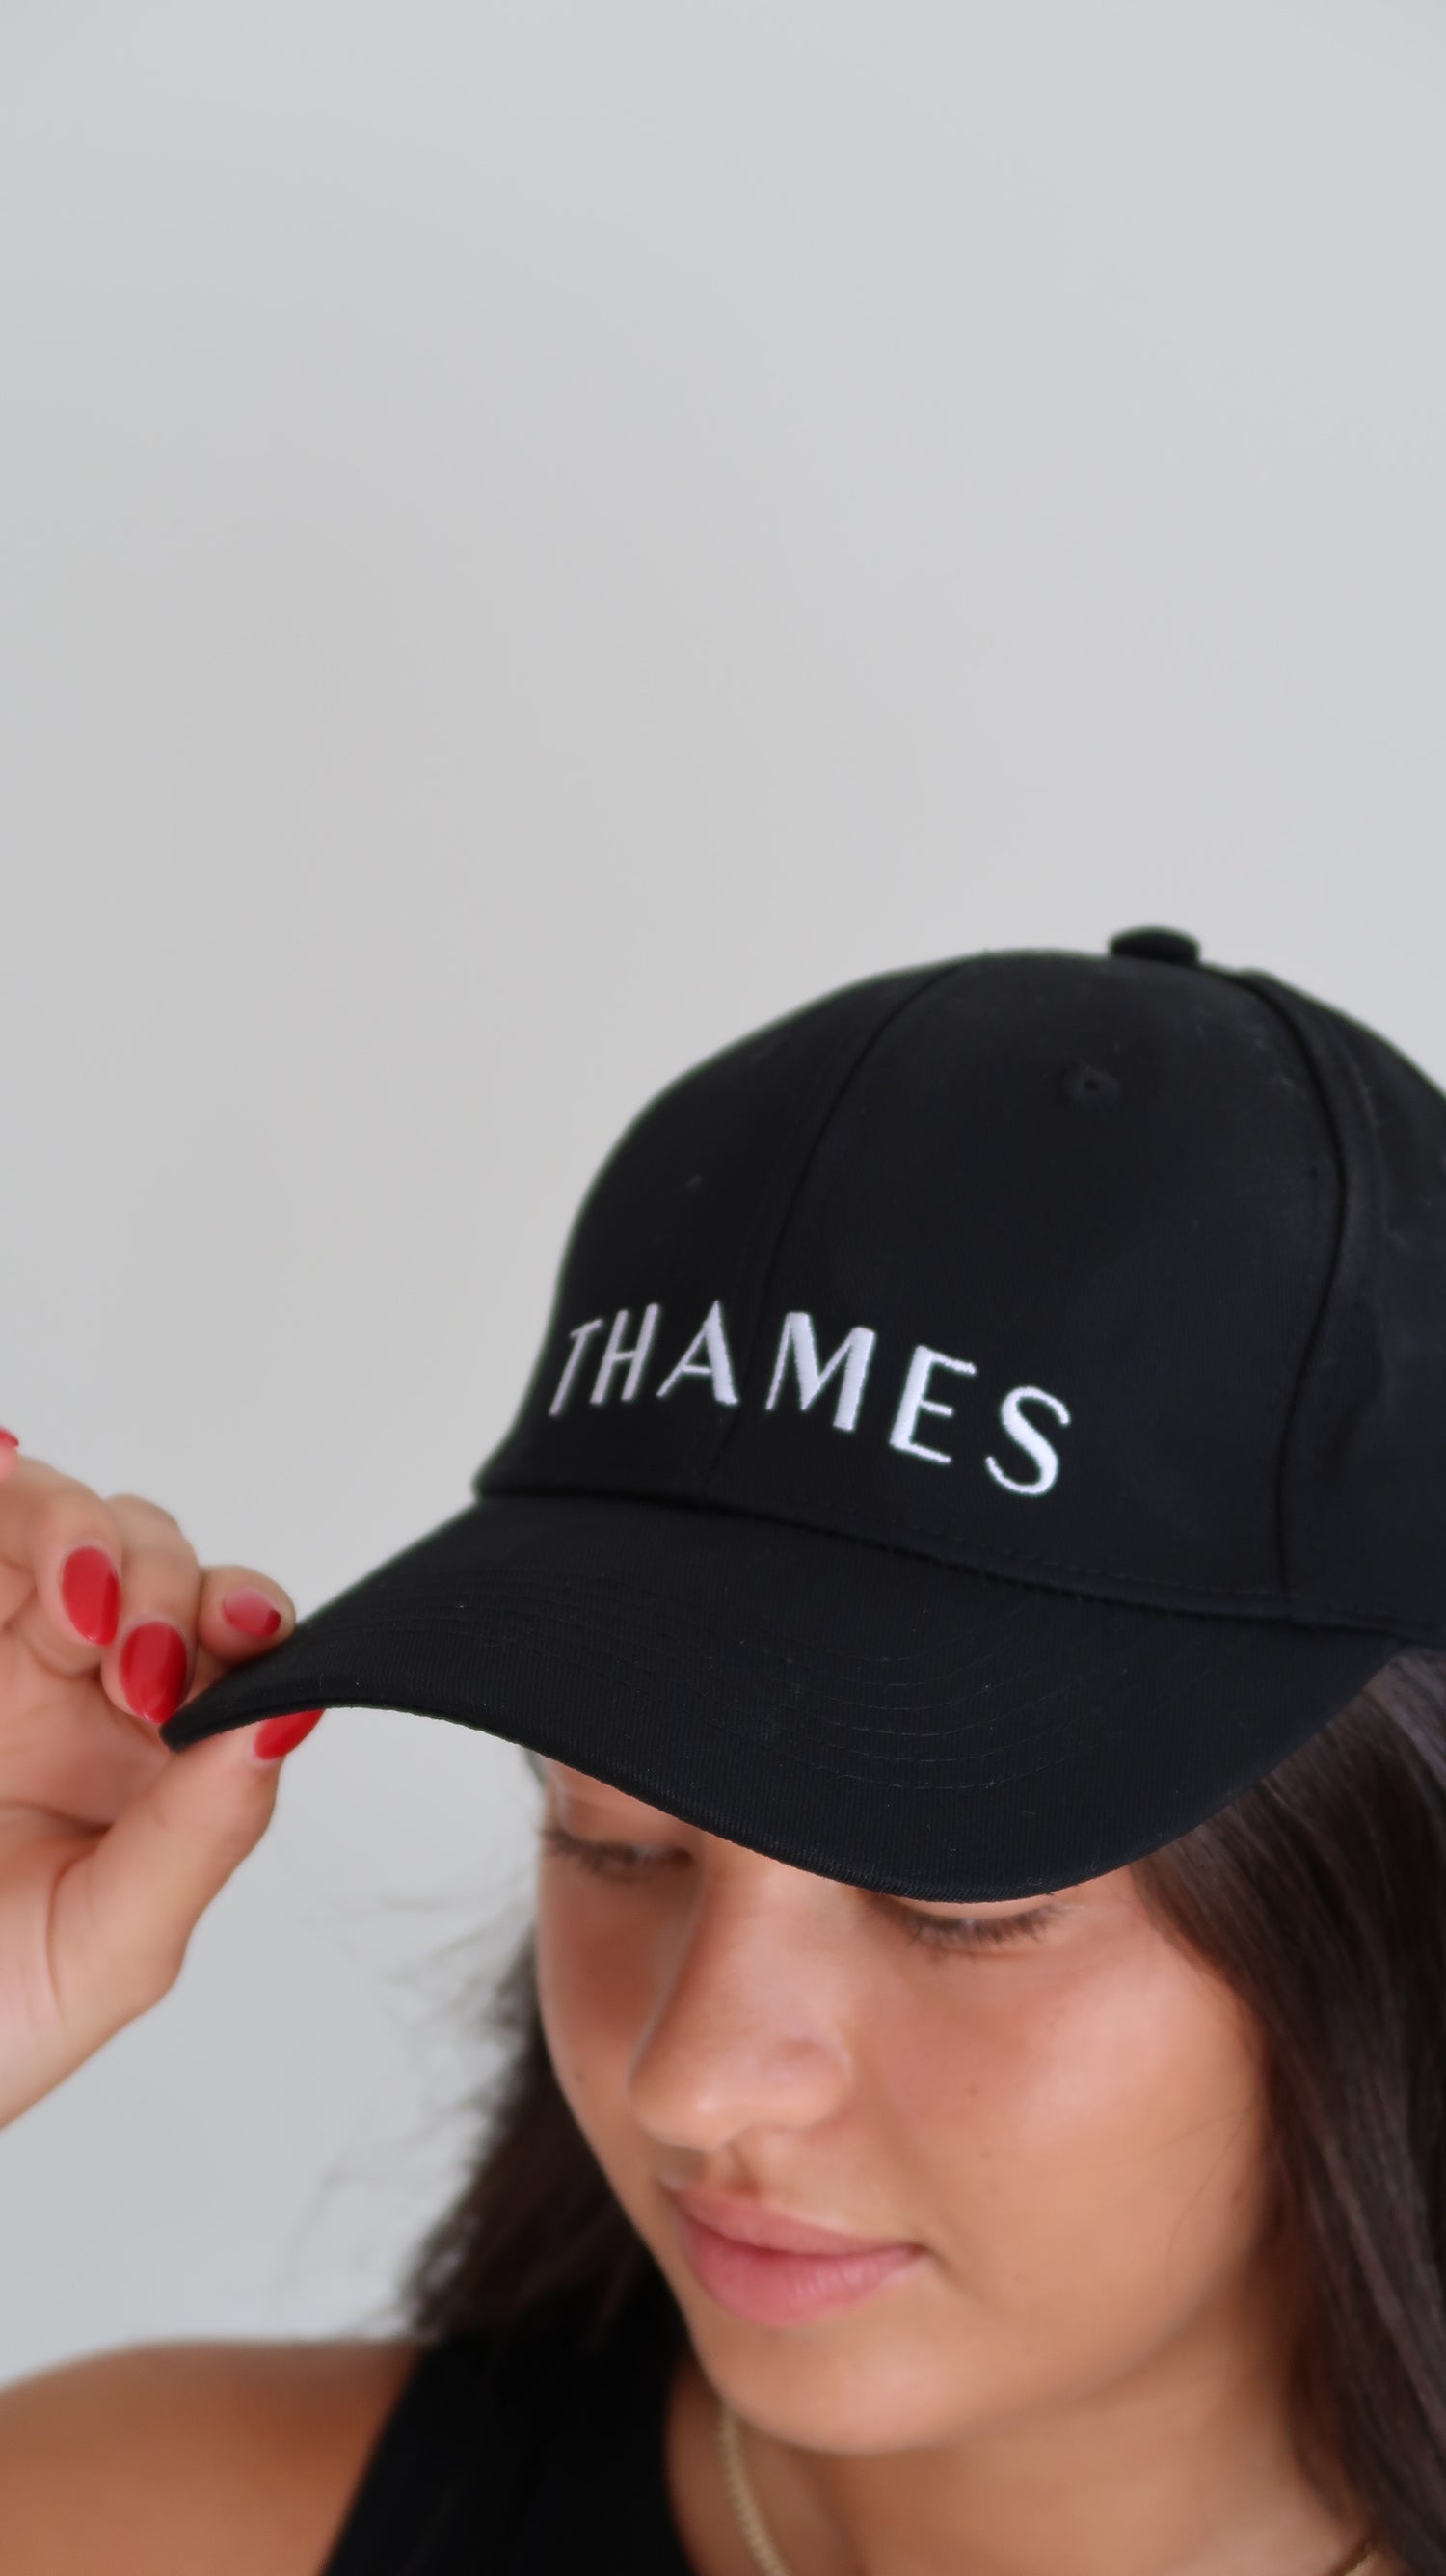 Thames Black Cap 